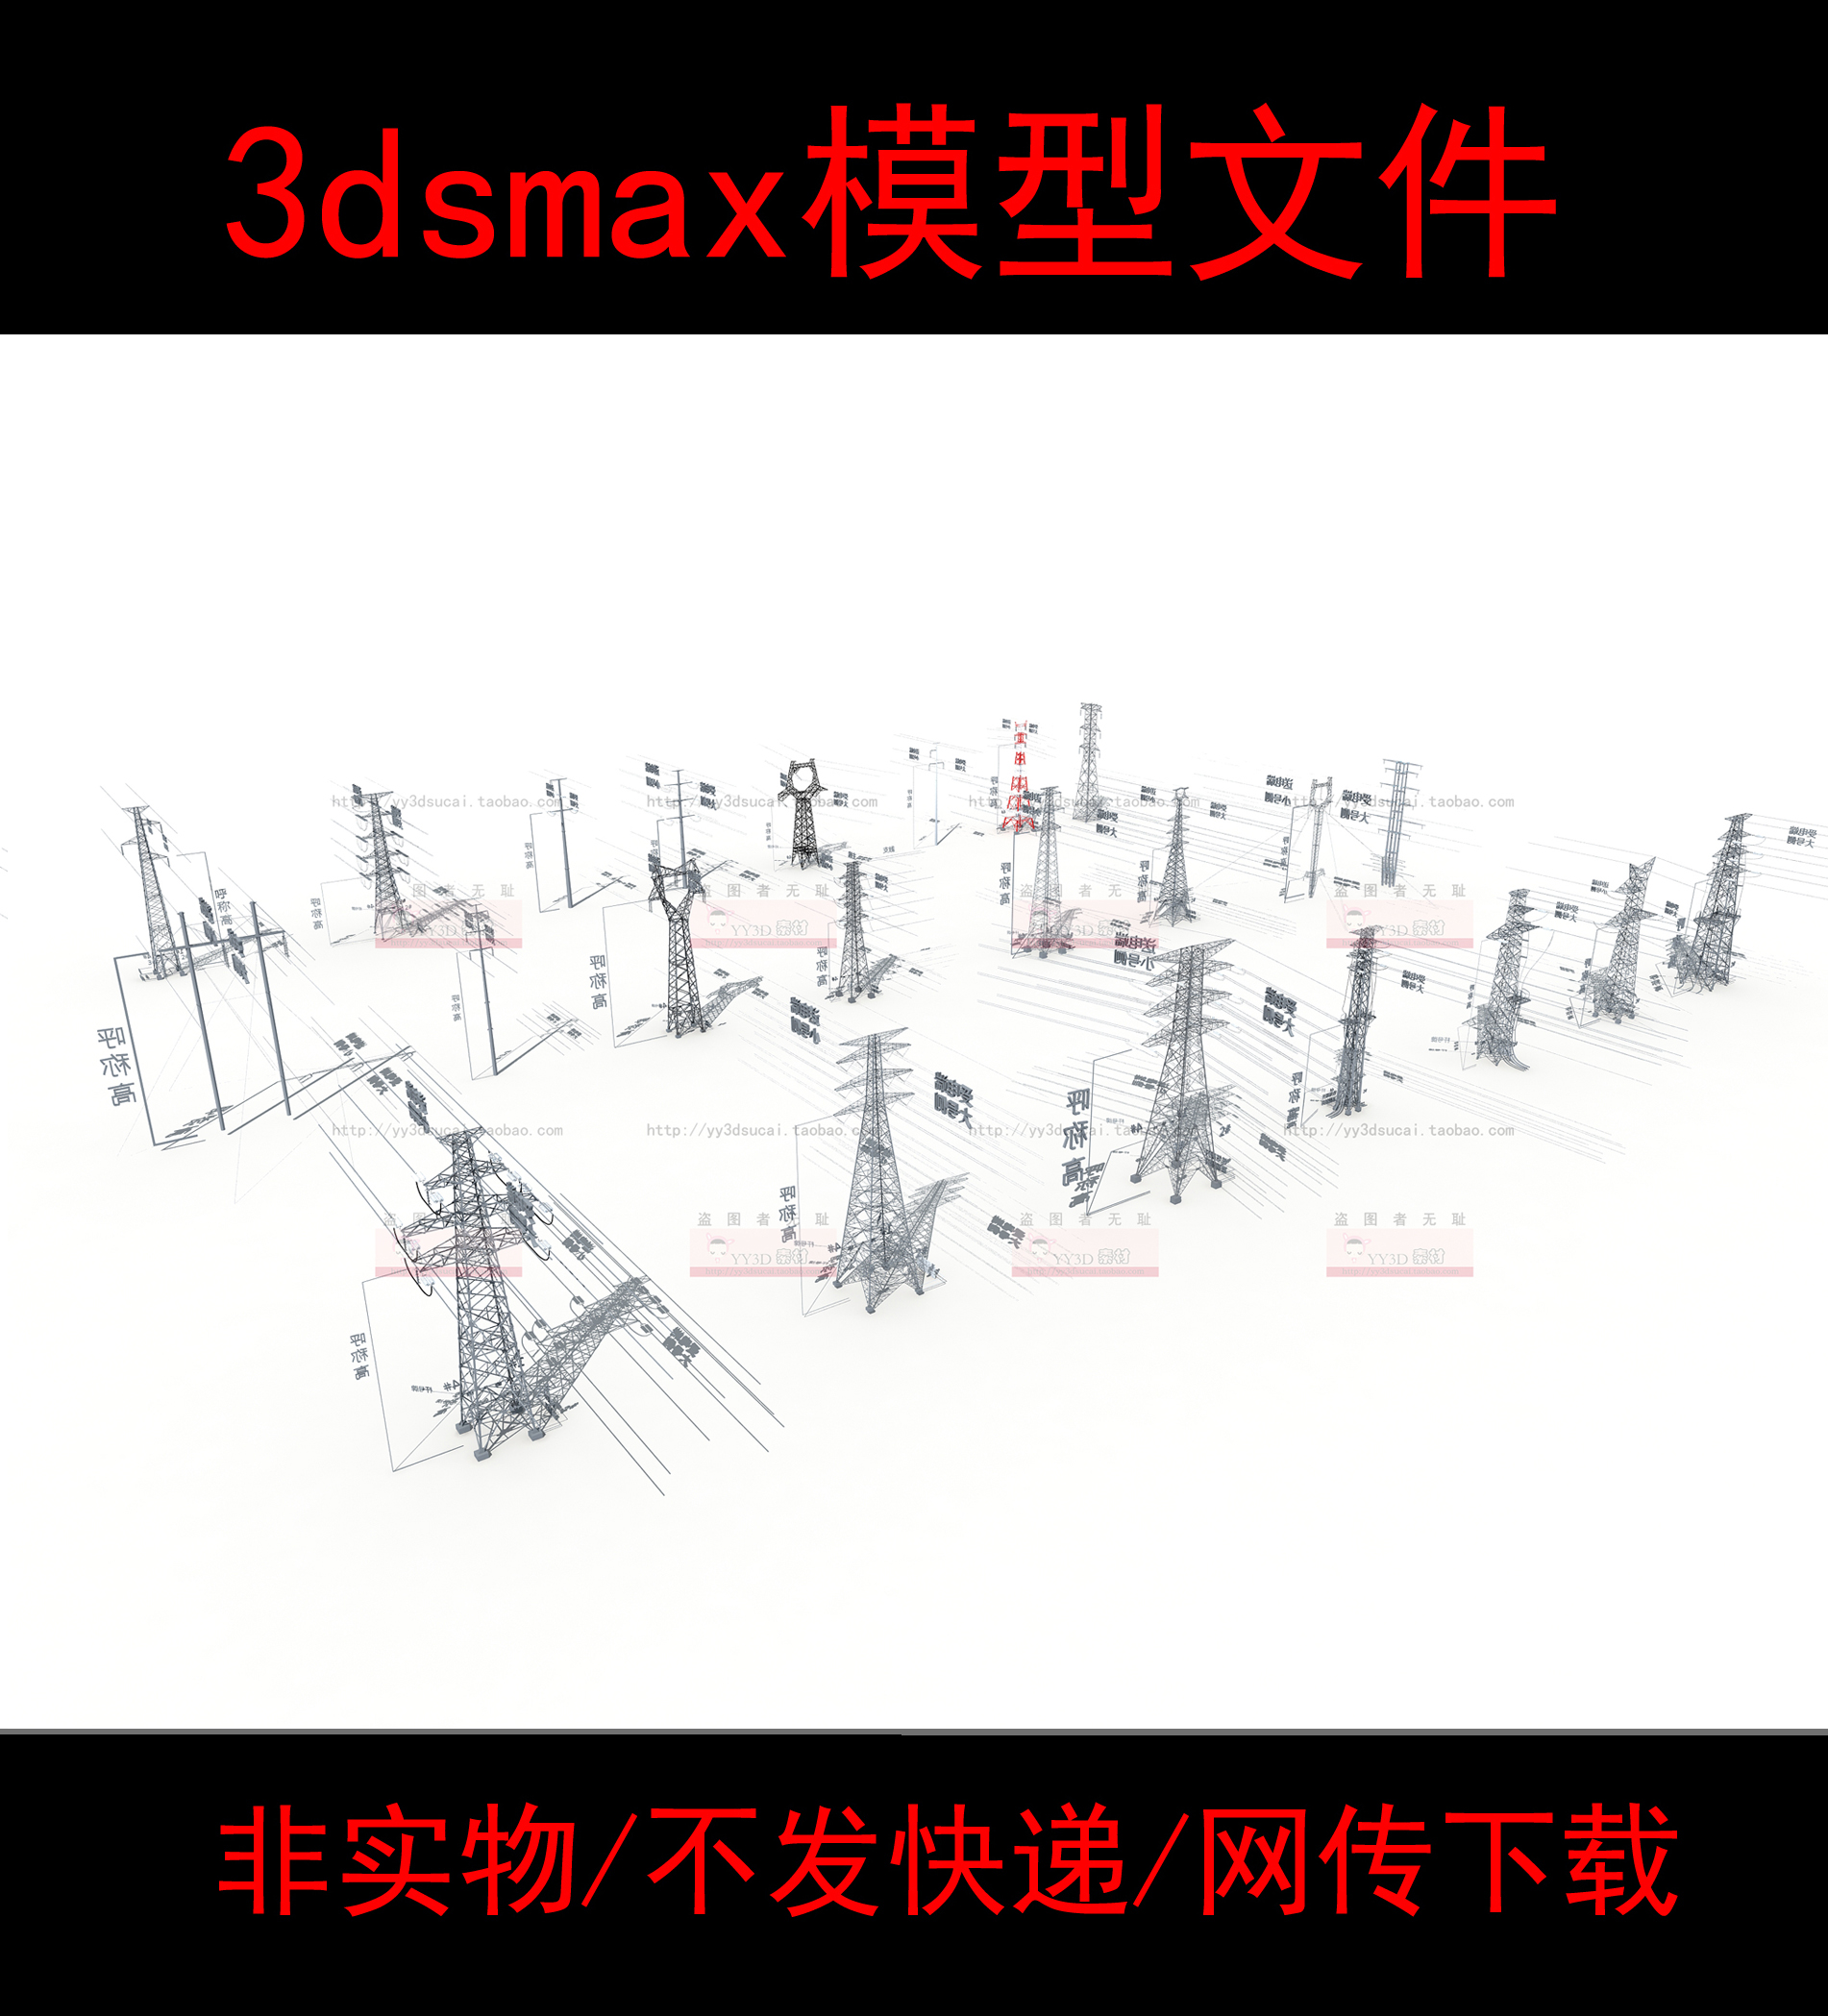 非实物无快递高压线塔3dsmax模型素材电线钢塔高压线电线塔电线杆